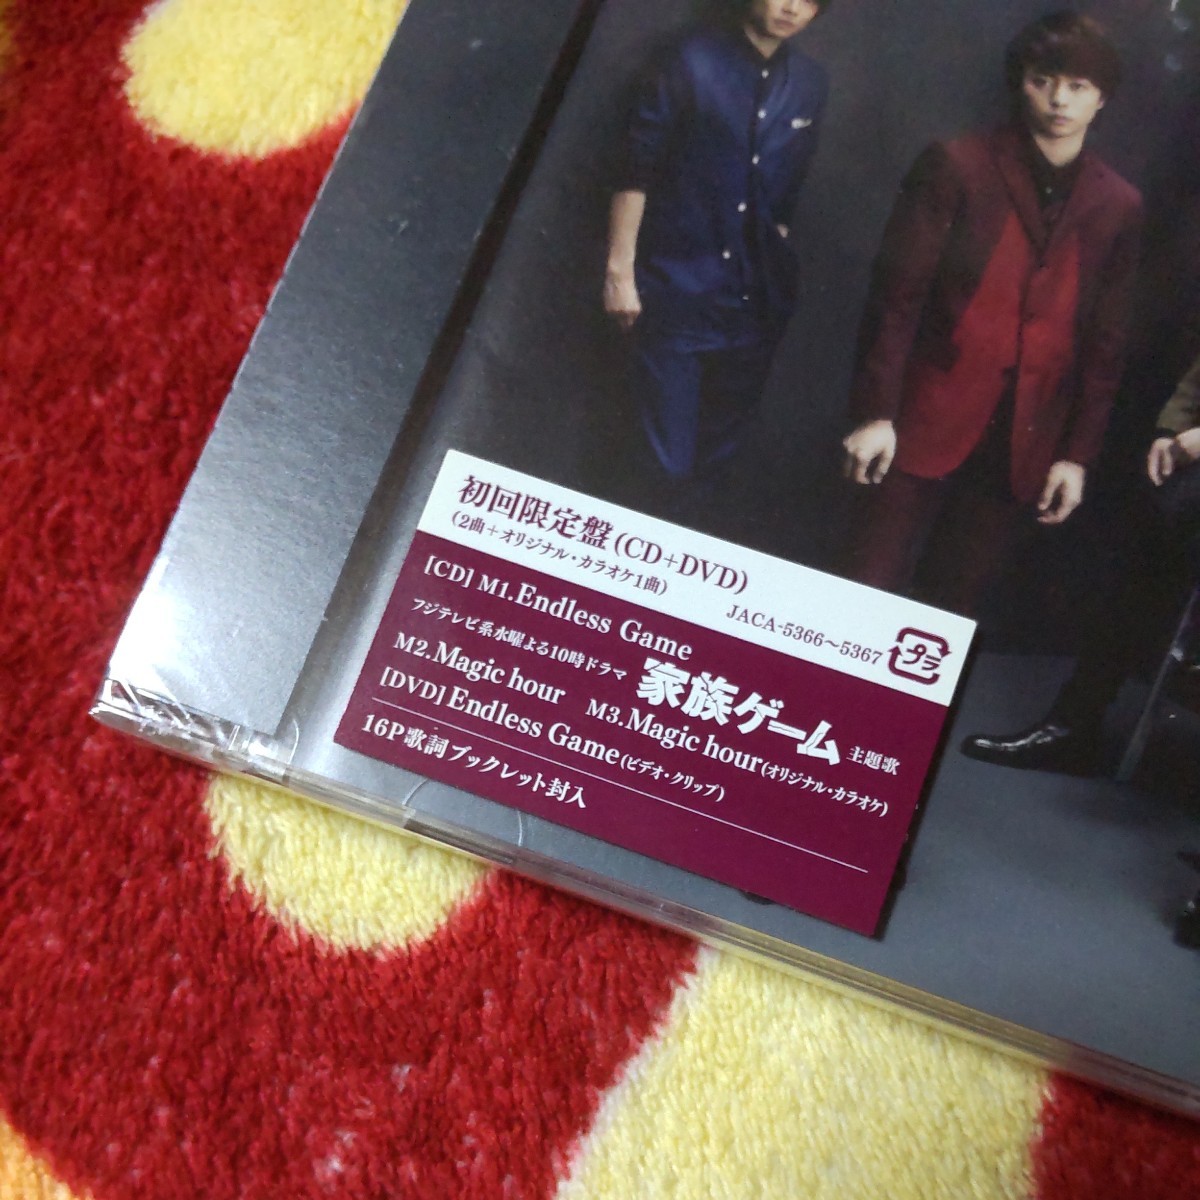 【新品未開封】嵐 ARASHI Endless Game CD+DVD 初回限定盤_画像2